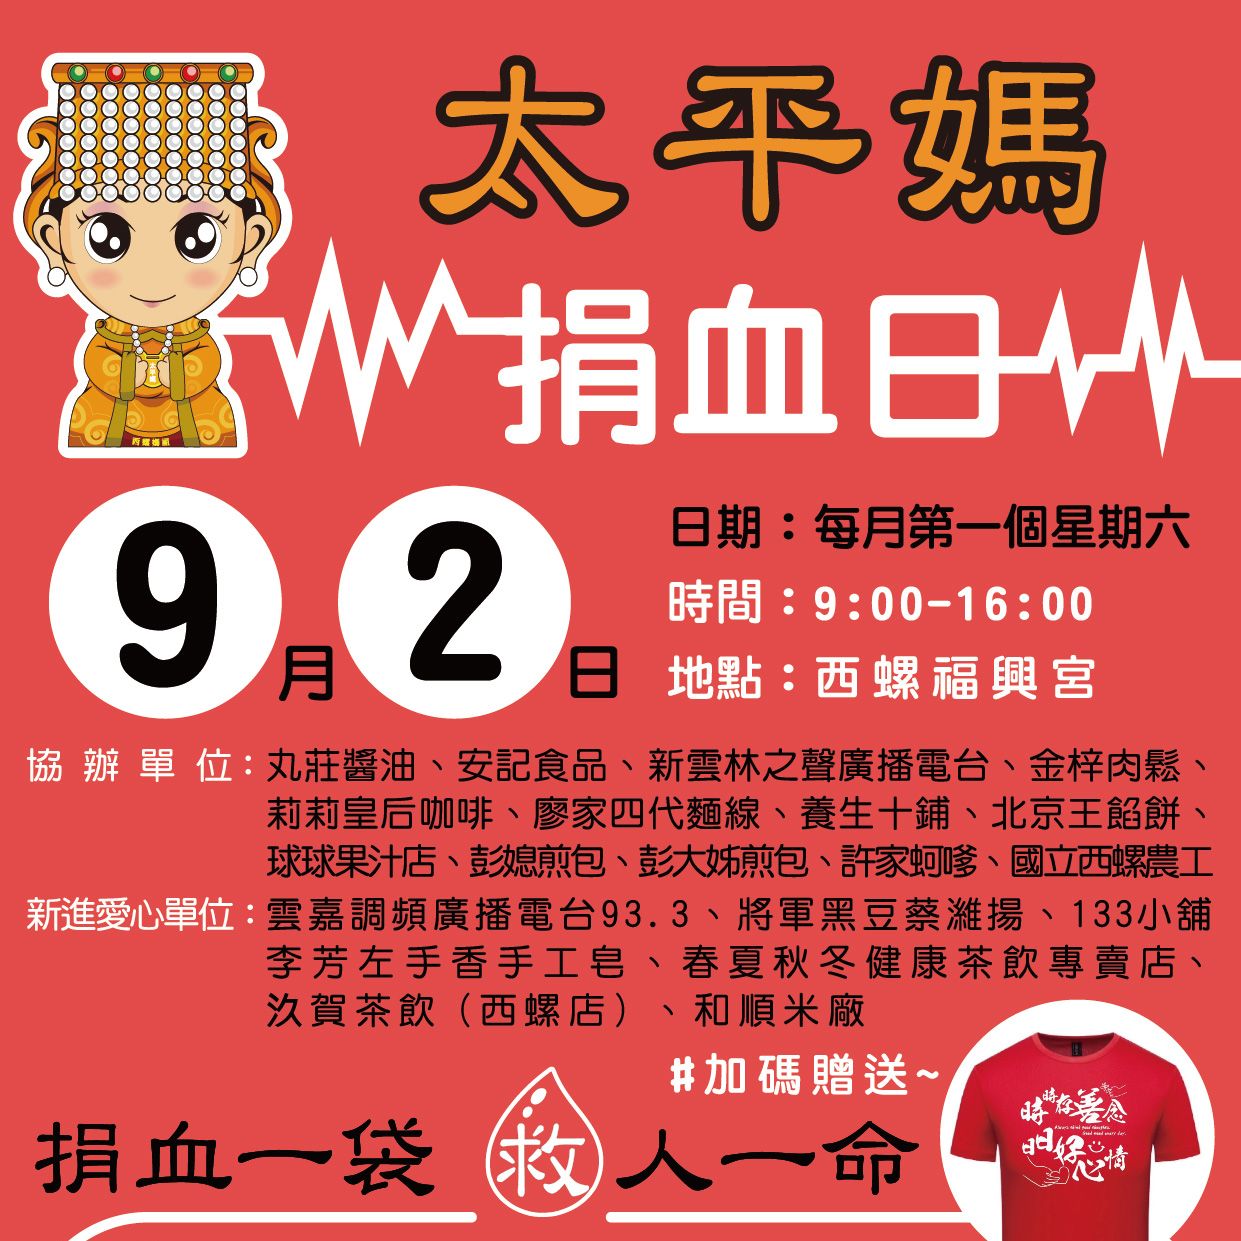 熱血募集中 -九月捐血日